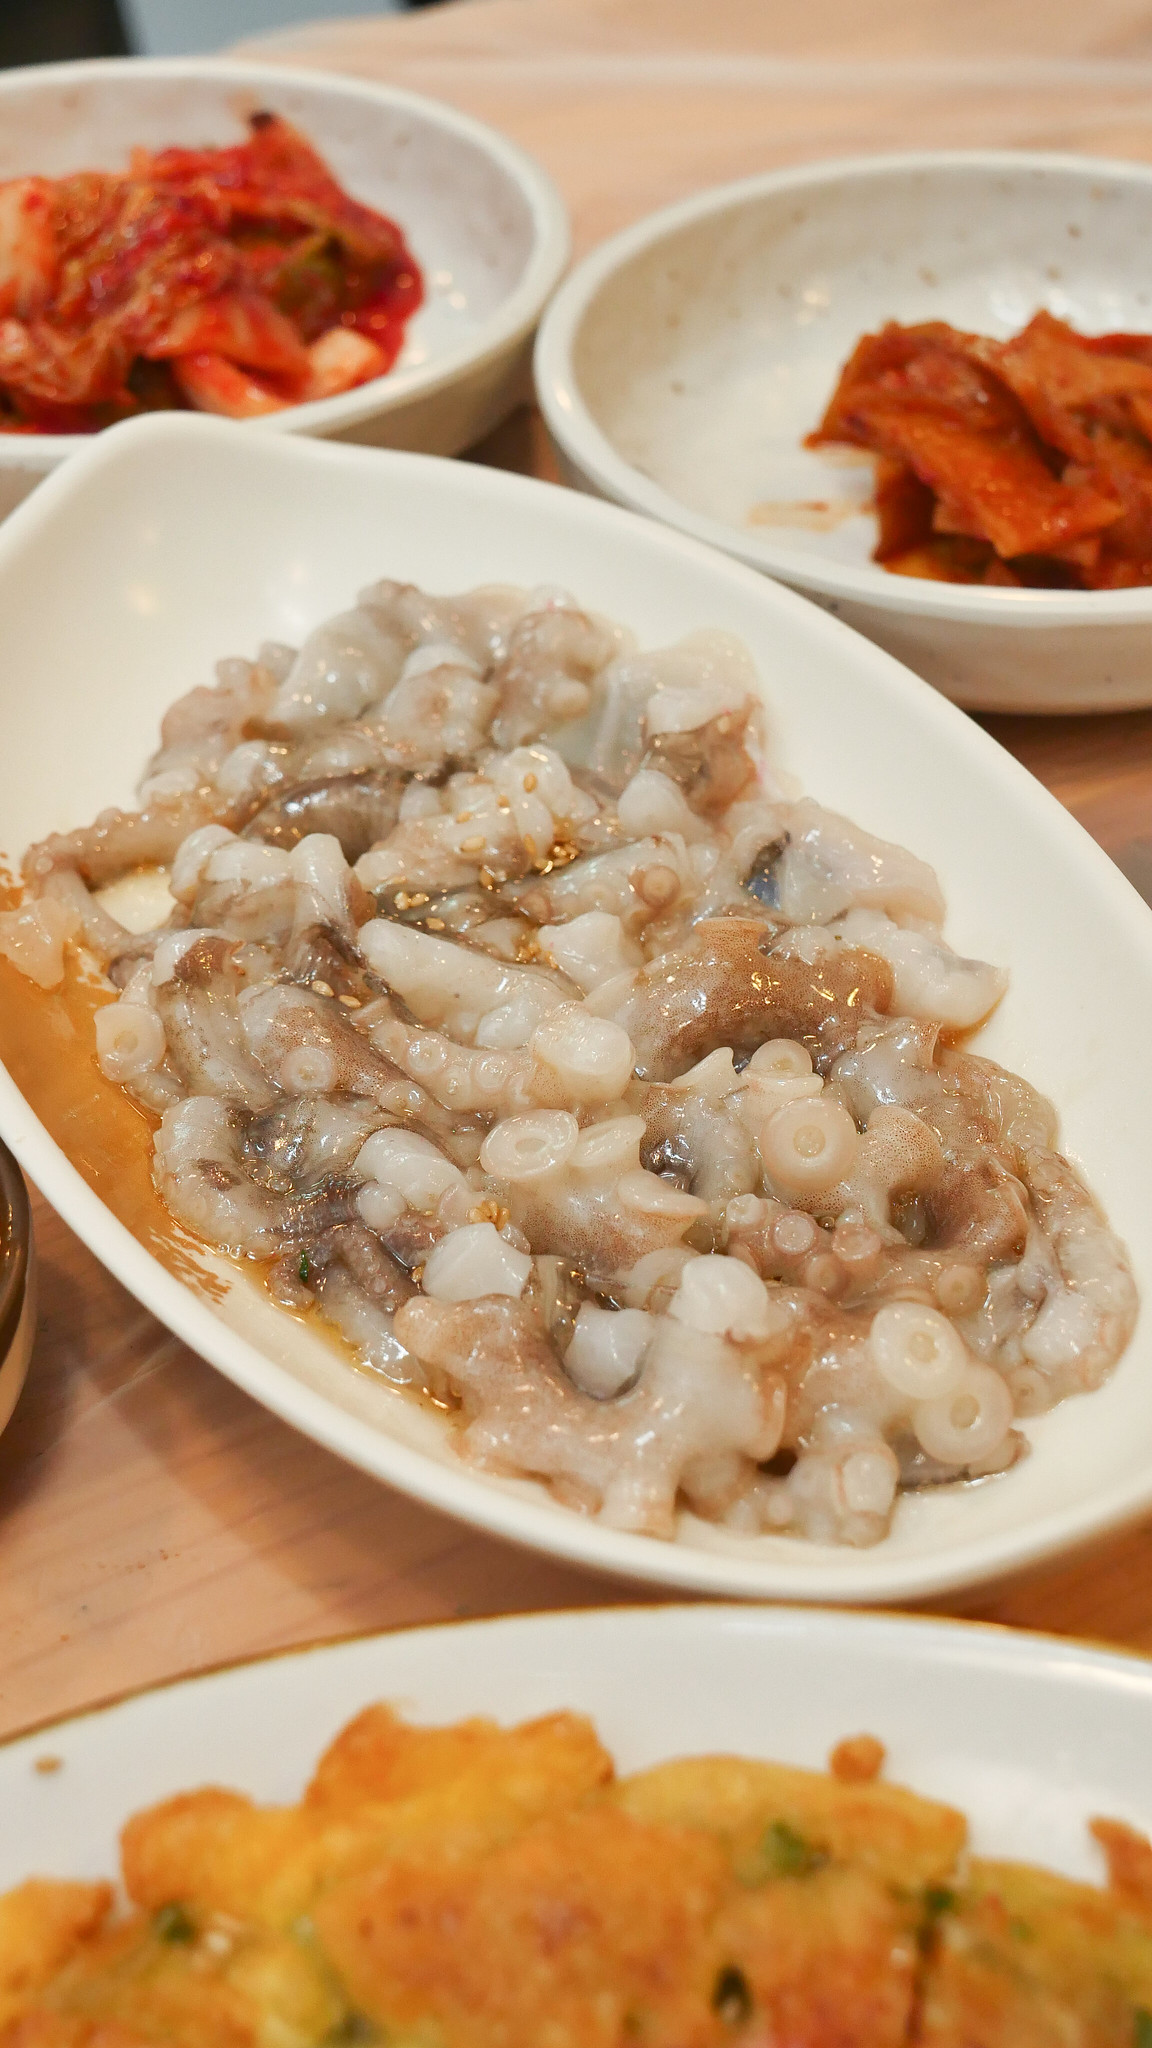 Pohang海鲜 - 章鱼